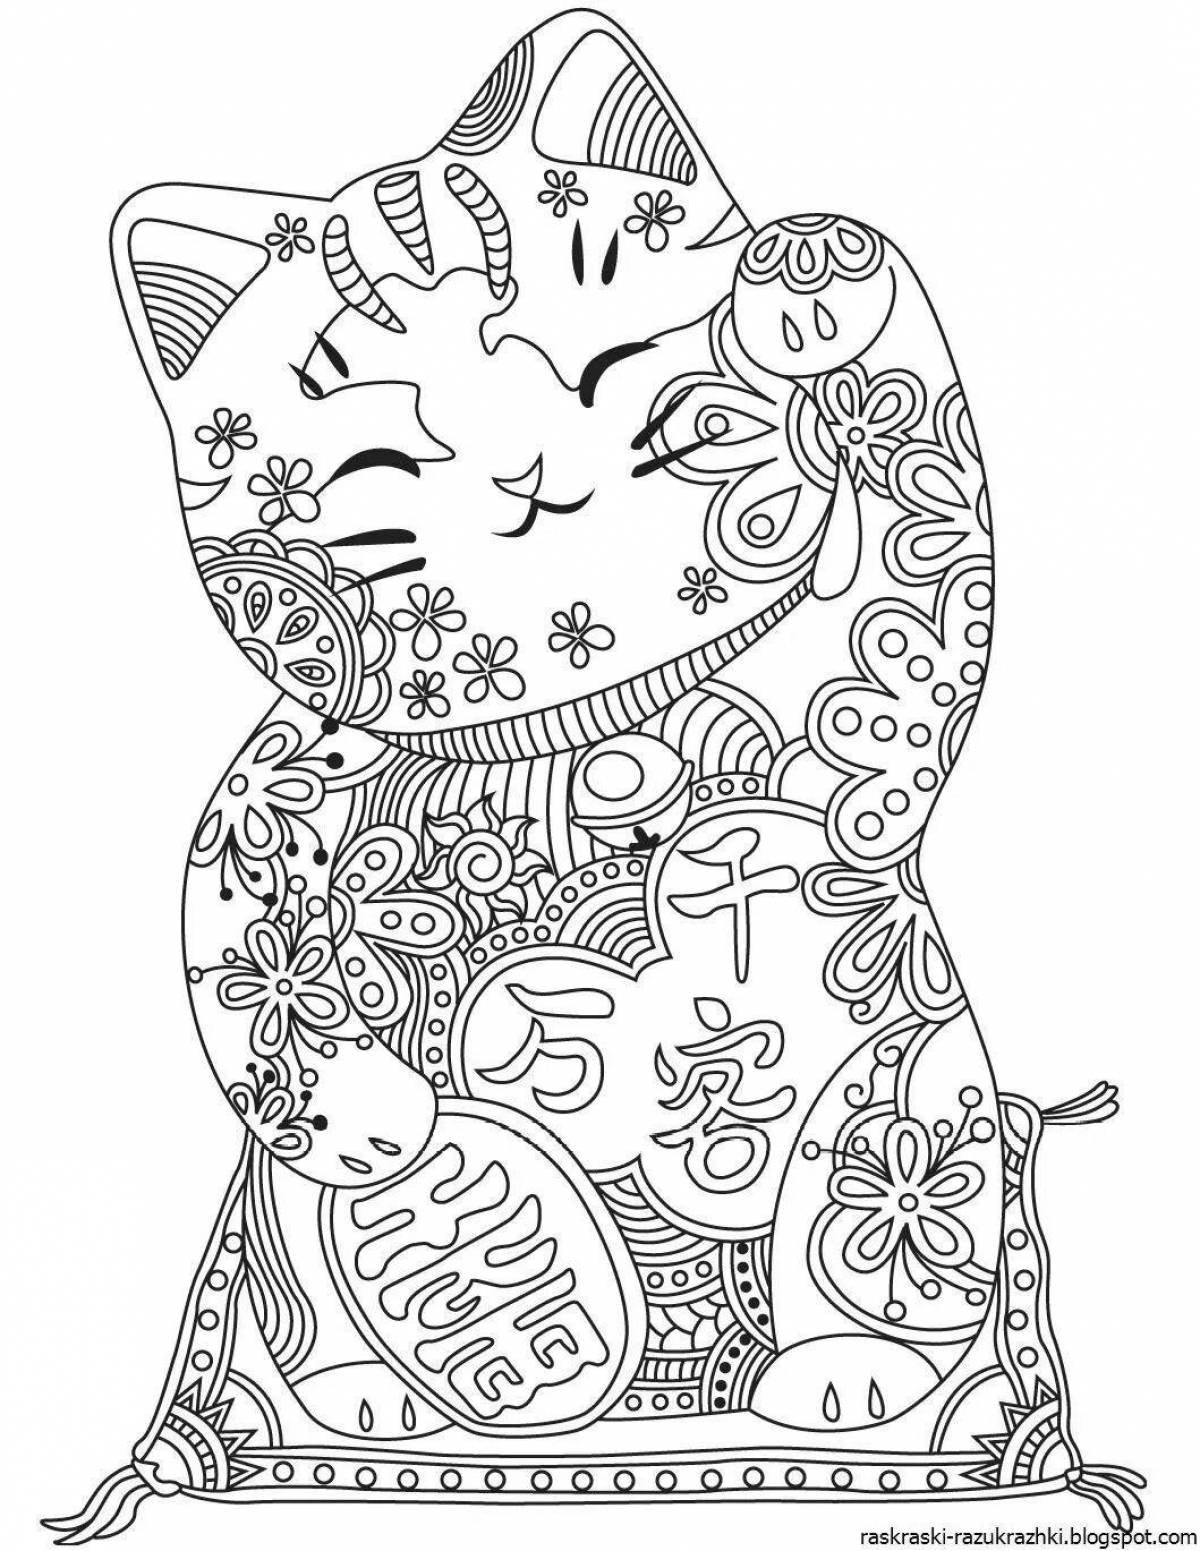 Увлекательная раскраска для девочек 12 лет - кошки